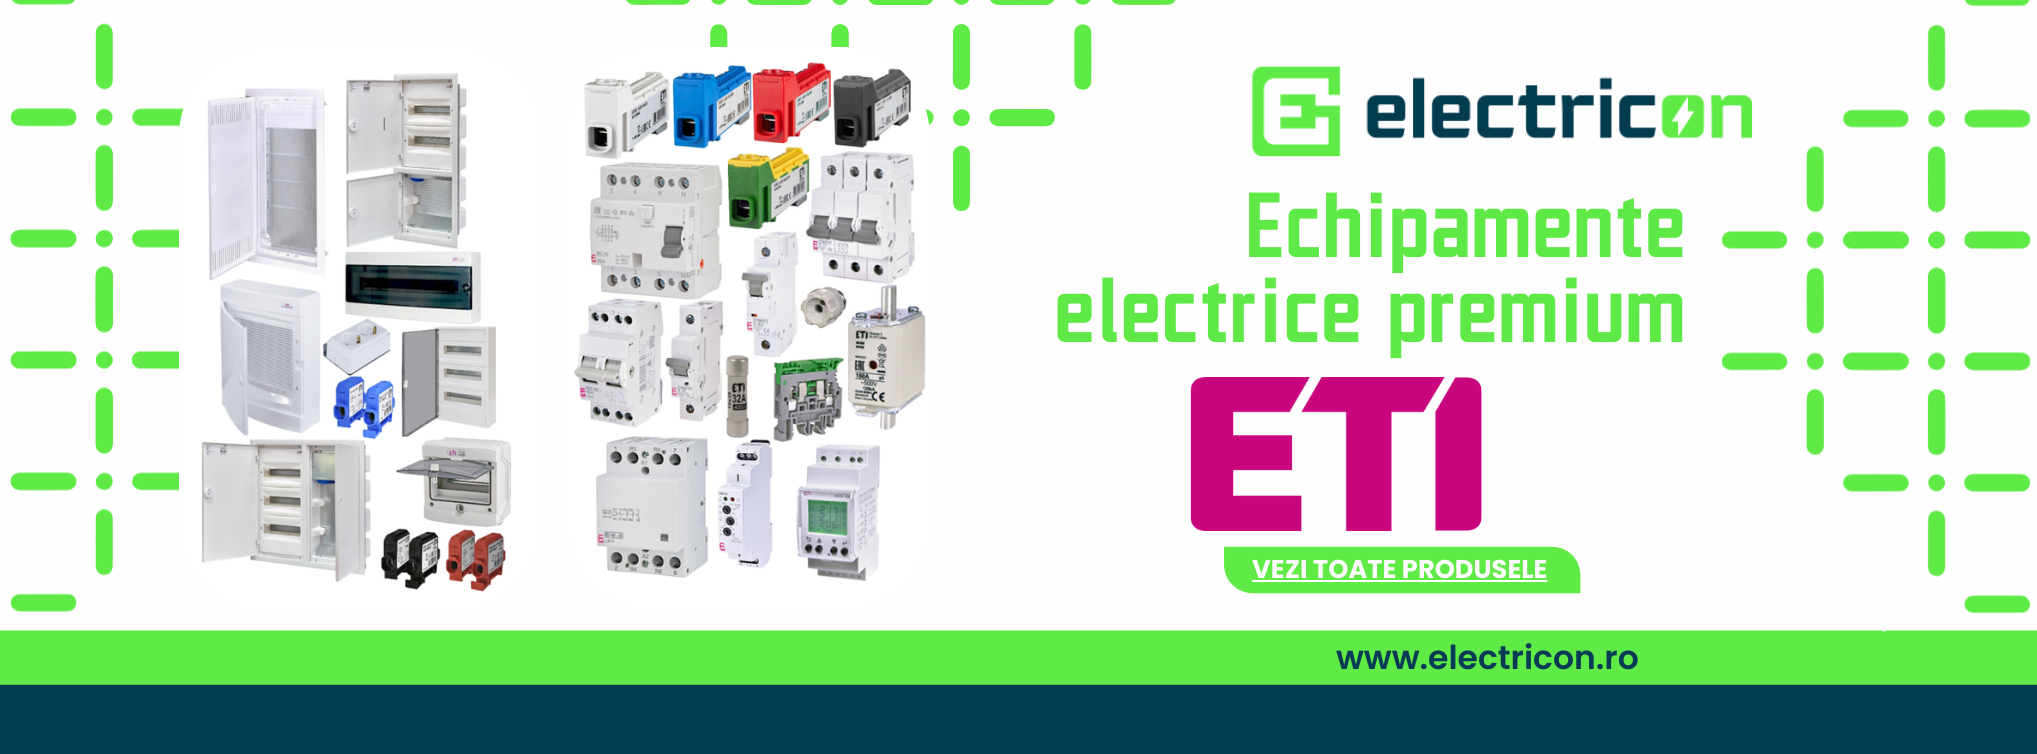 Produse ETI - Electricon.ro